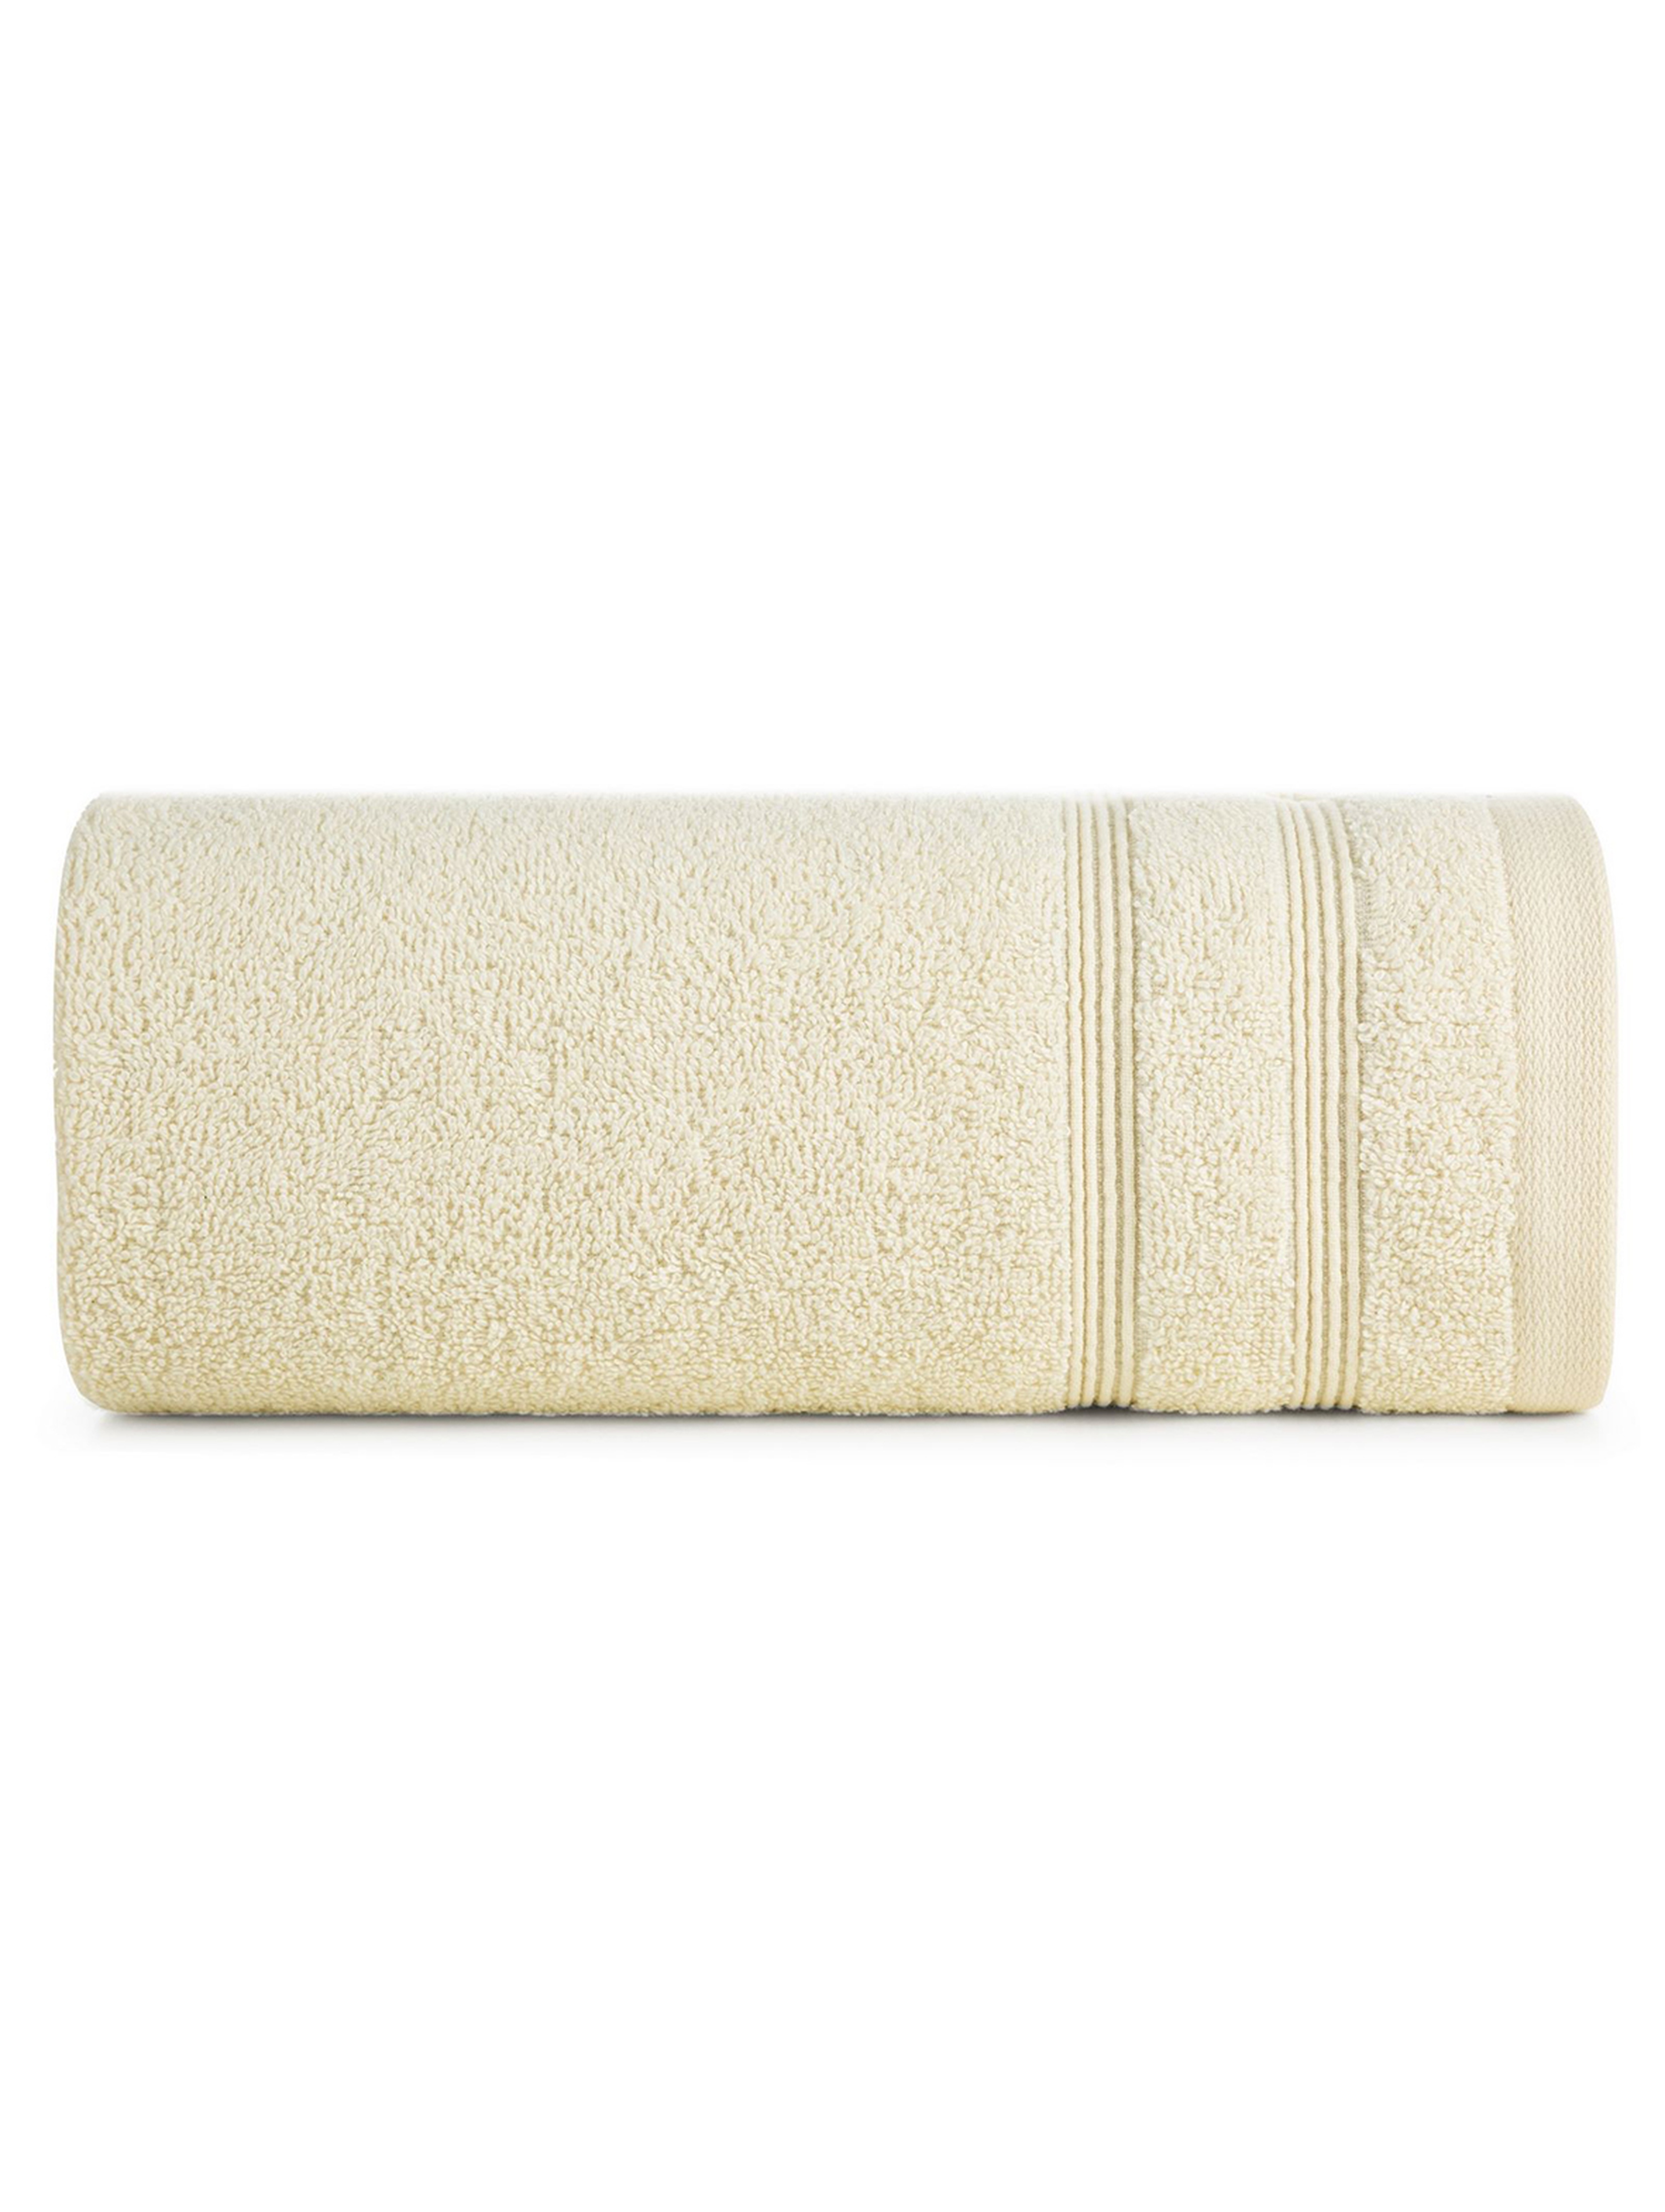 Ręcznik Aline 50x90 cm - kremowy